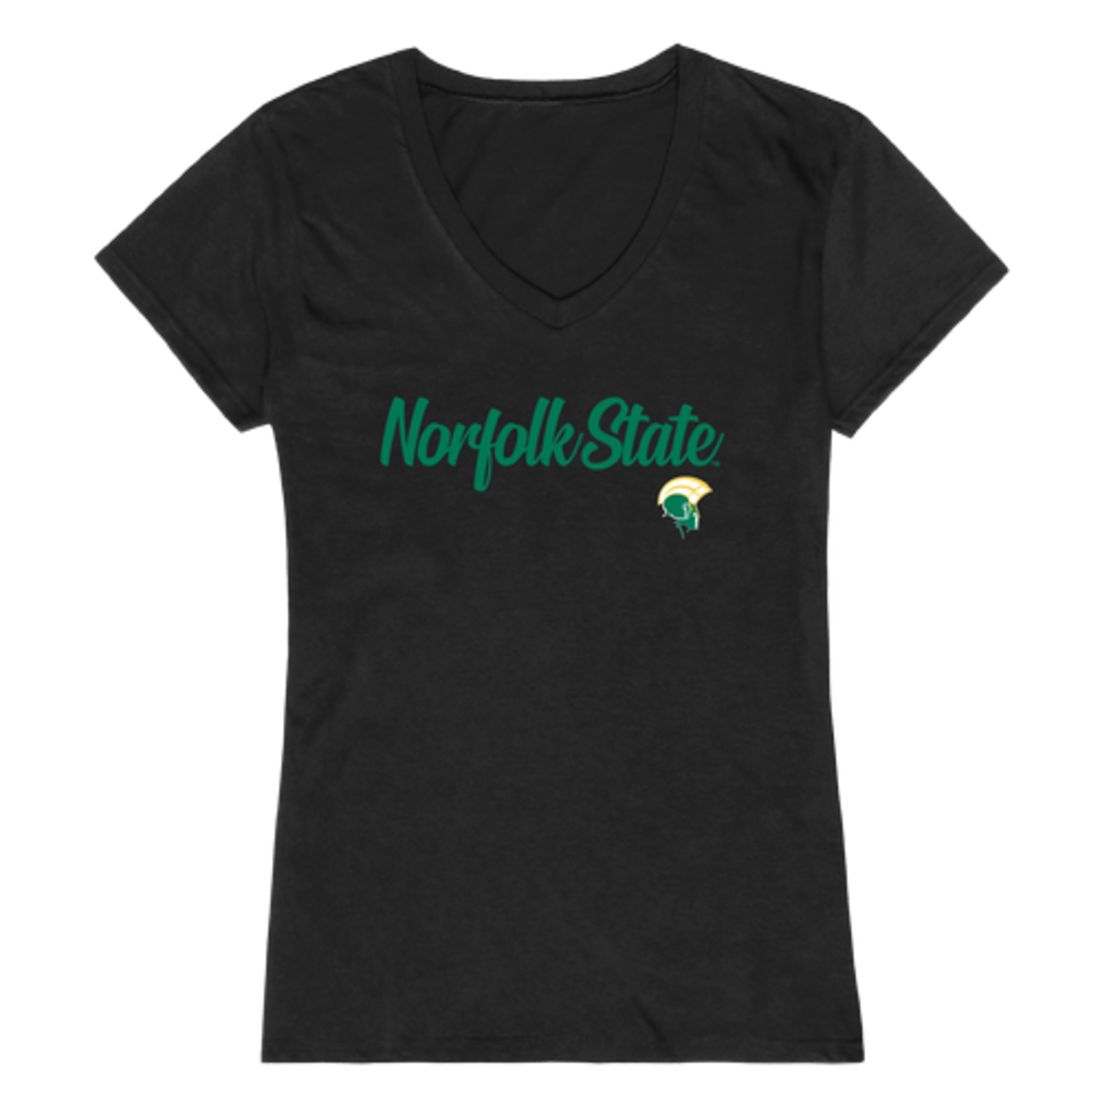 NSU Norfolk State University Spartans Womens Script Tee T-Shirt-Campus-Wardrobe